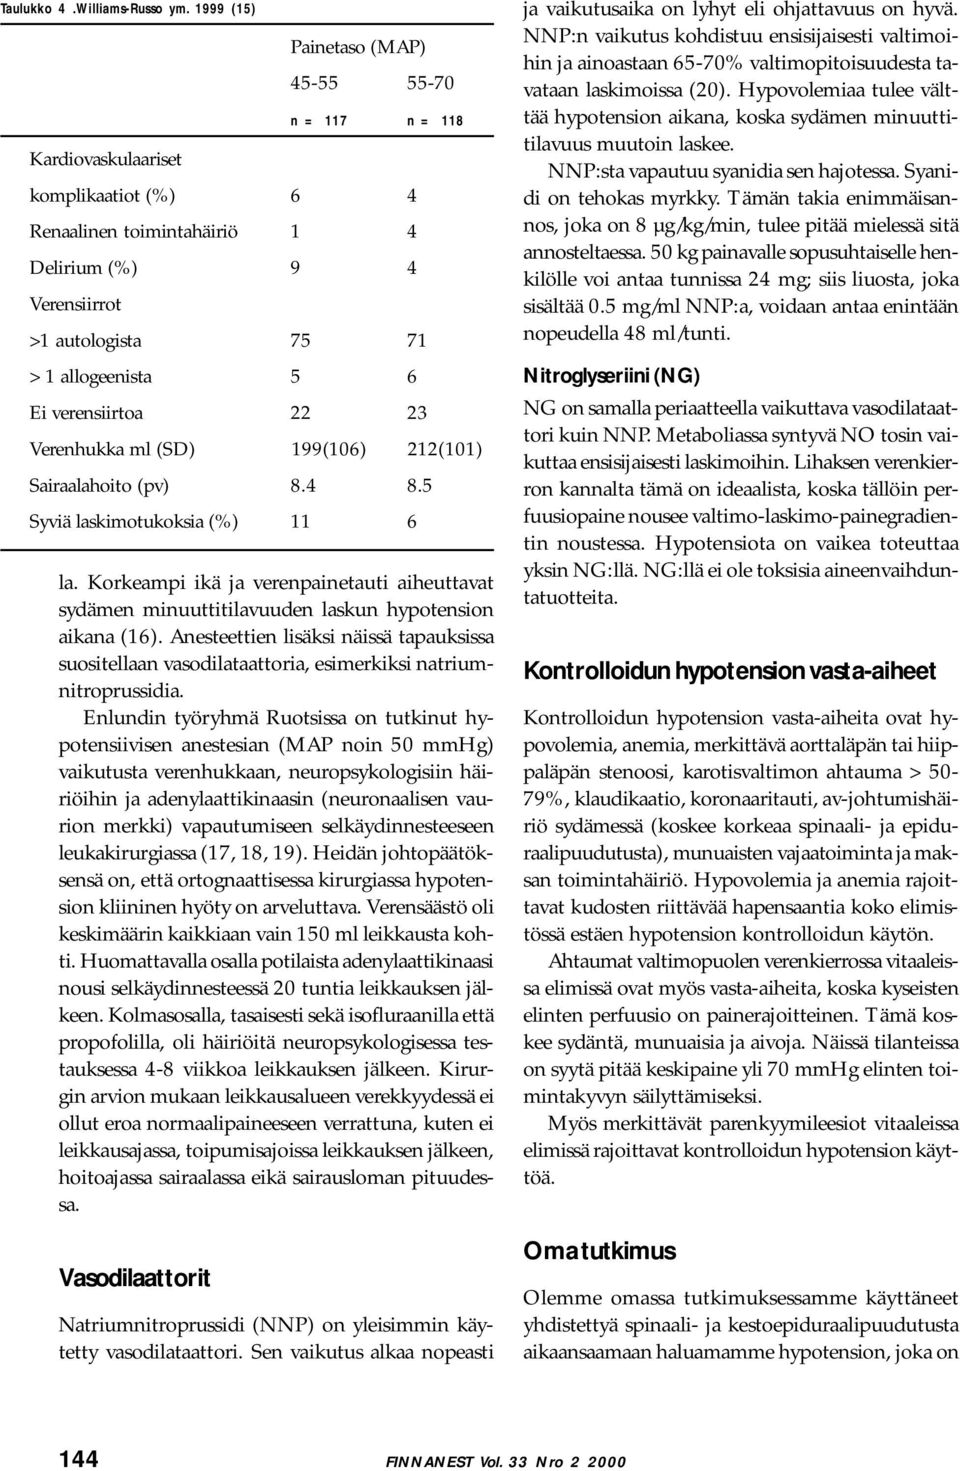 Enlundin työryhmä Ruotsissa on tutkinut hypotensiivisen anestesian (MAP noin 50 mmhg) vaikutusta verenhukkaan, neuropsykologisiin häiriöihin ja adenylaattikinaasin (neuronaalisen vaurion merkki)